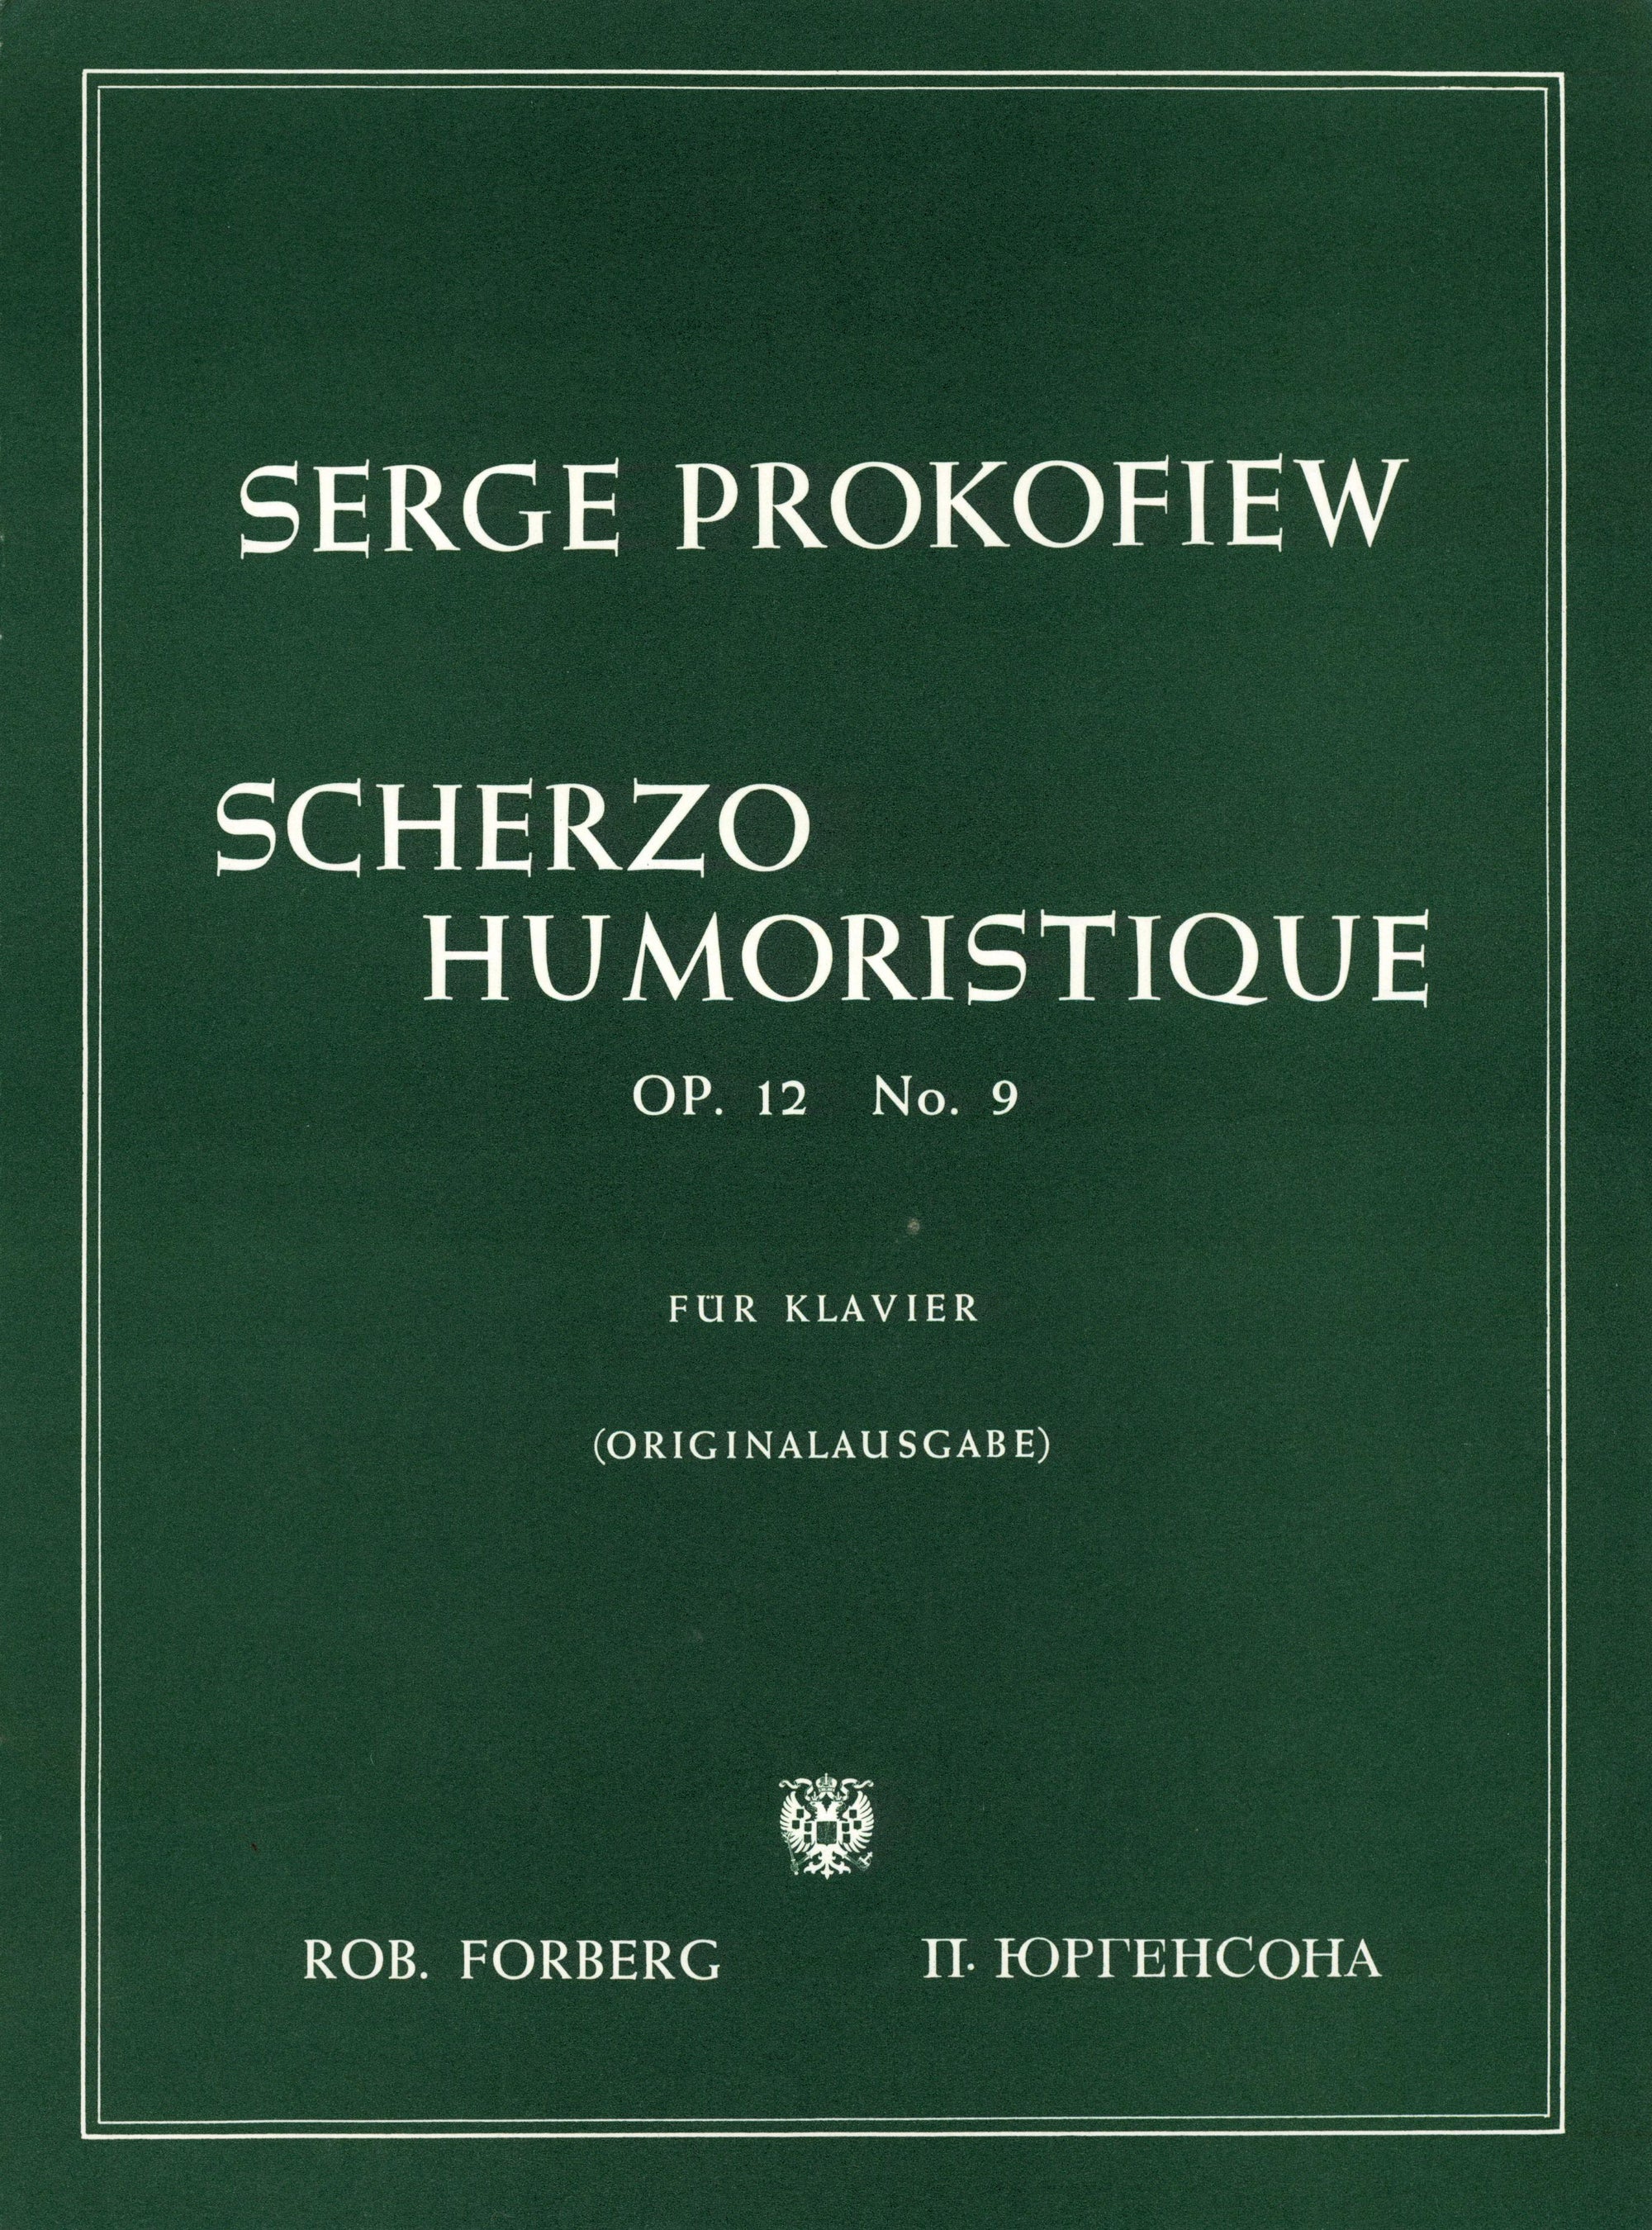 Prokofiev: Scherzo Humoristique, Op. 12, No. 9